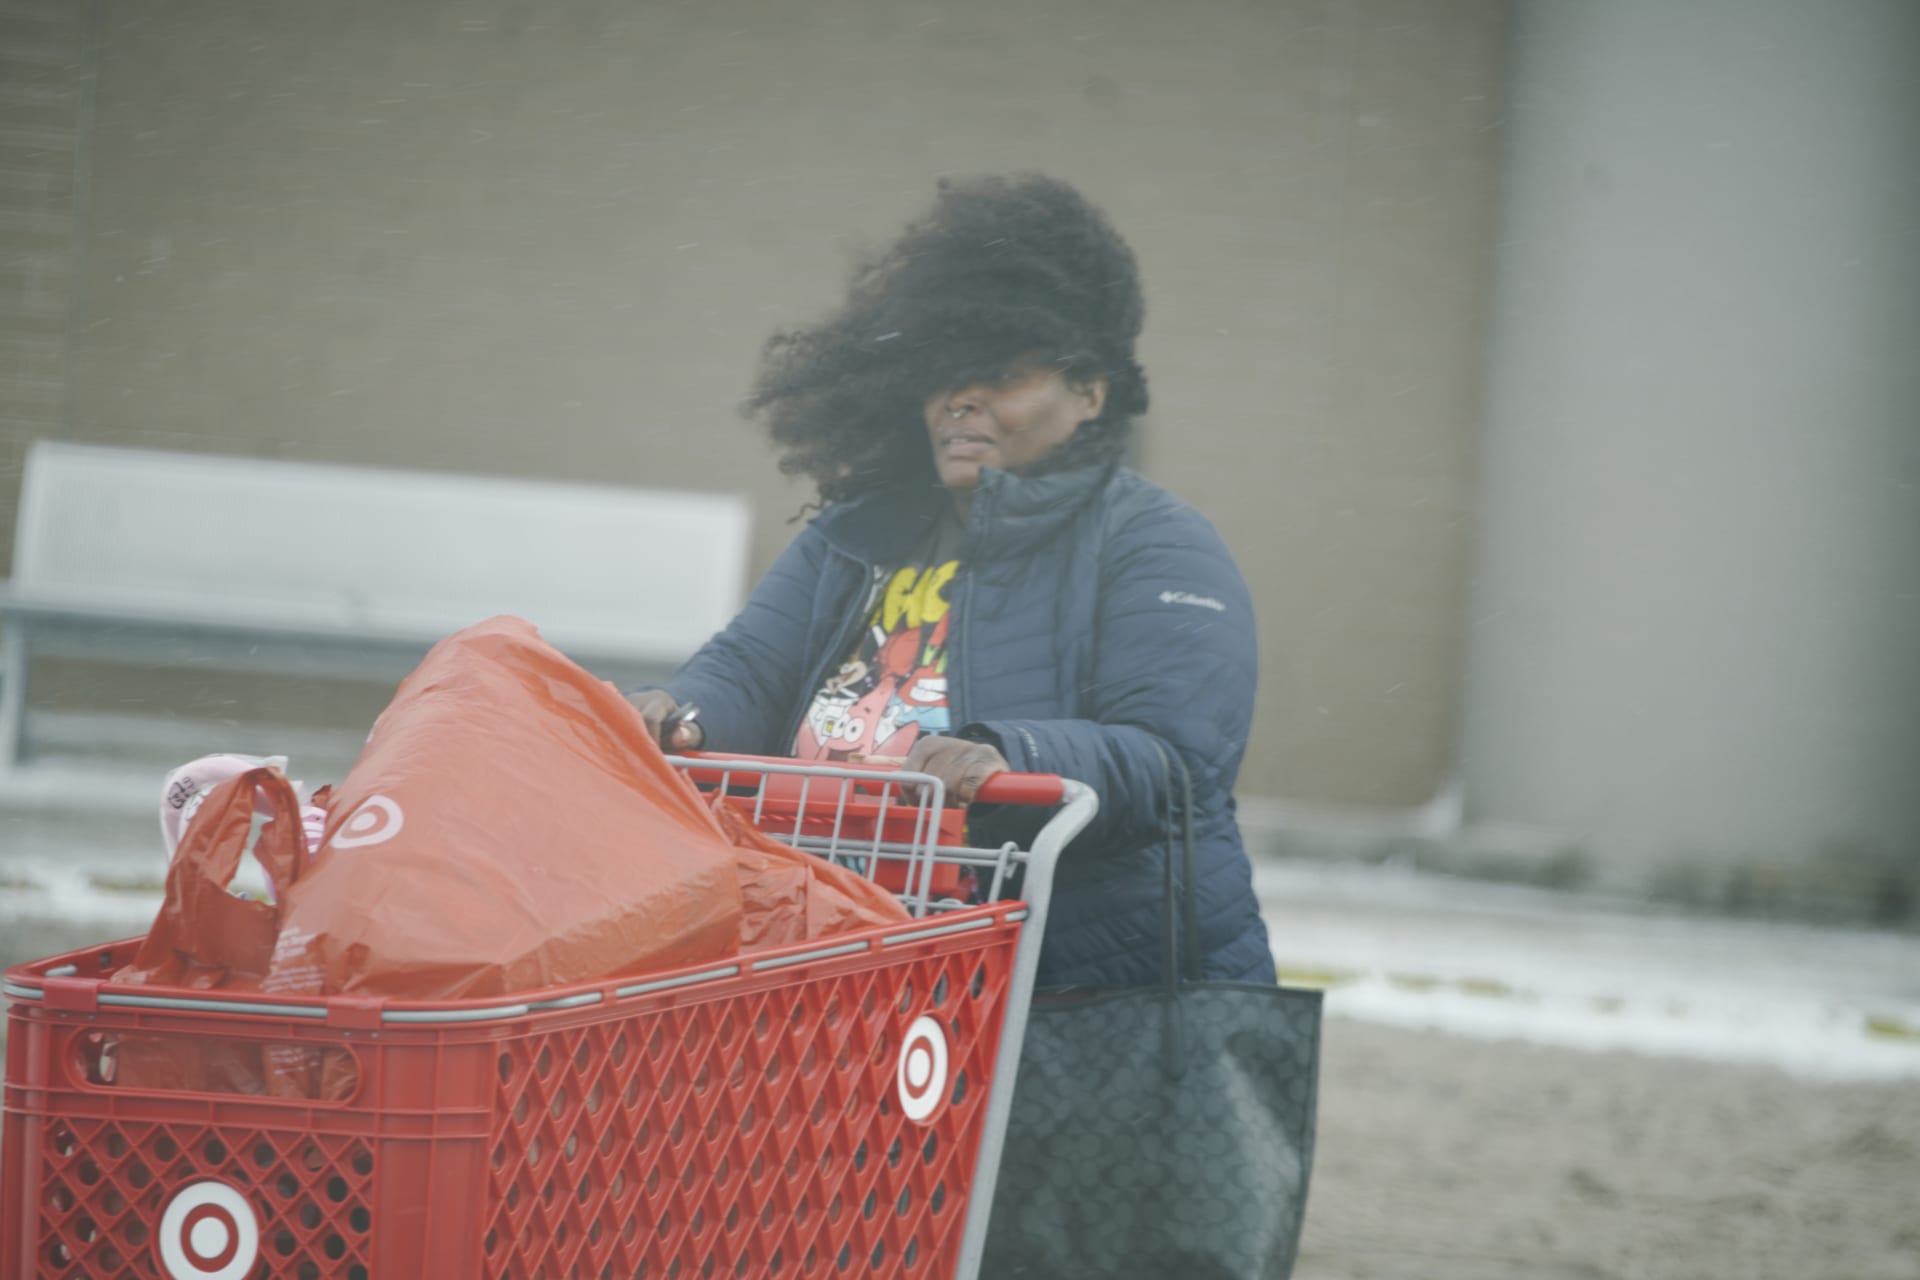  Nakupující na poslední chvíli reagují na silný nárazový vítr a mrazivé teploty zimní bouře, která zasáhla většinu USA, ve městě Flint ve státě Michigan 23. prosince 2022.